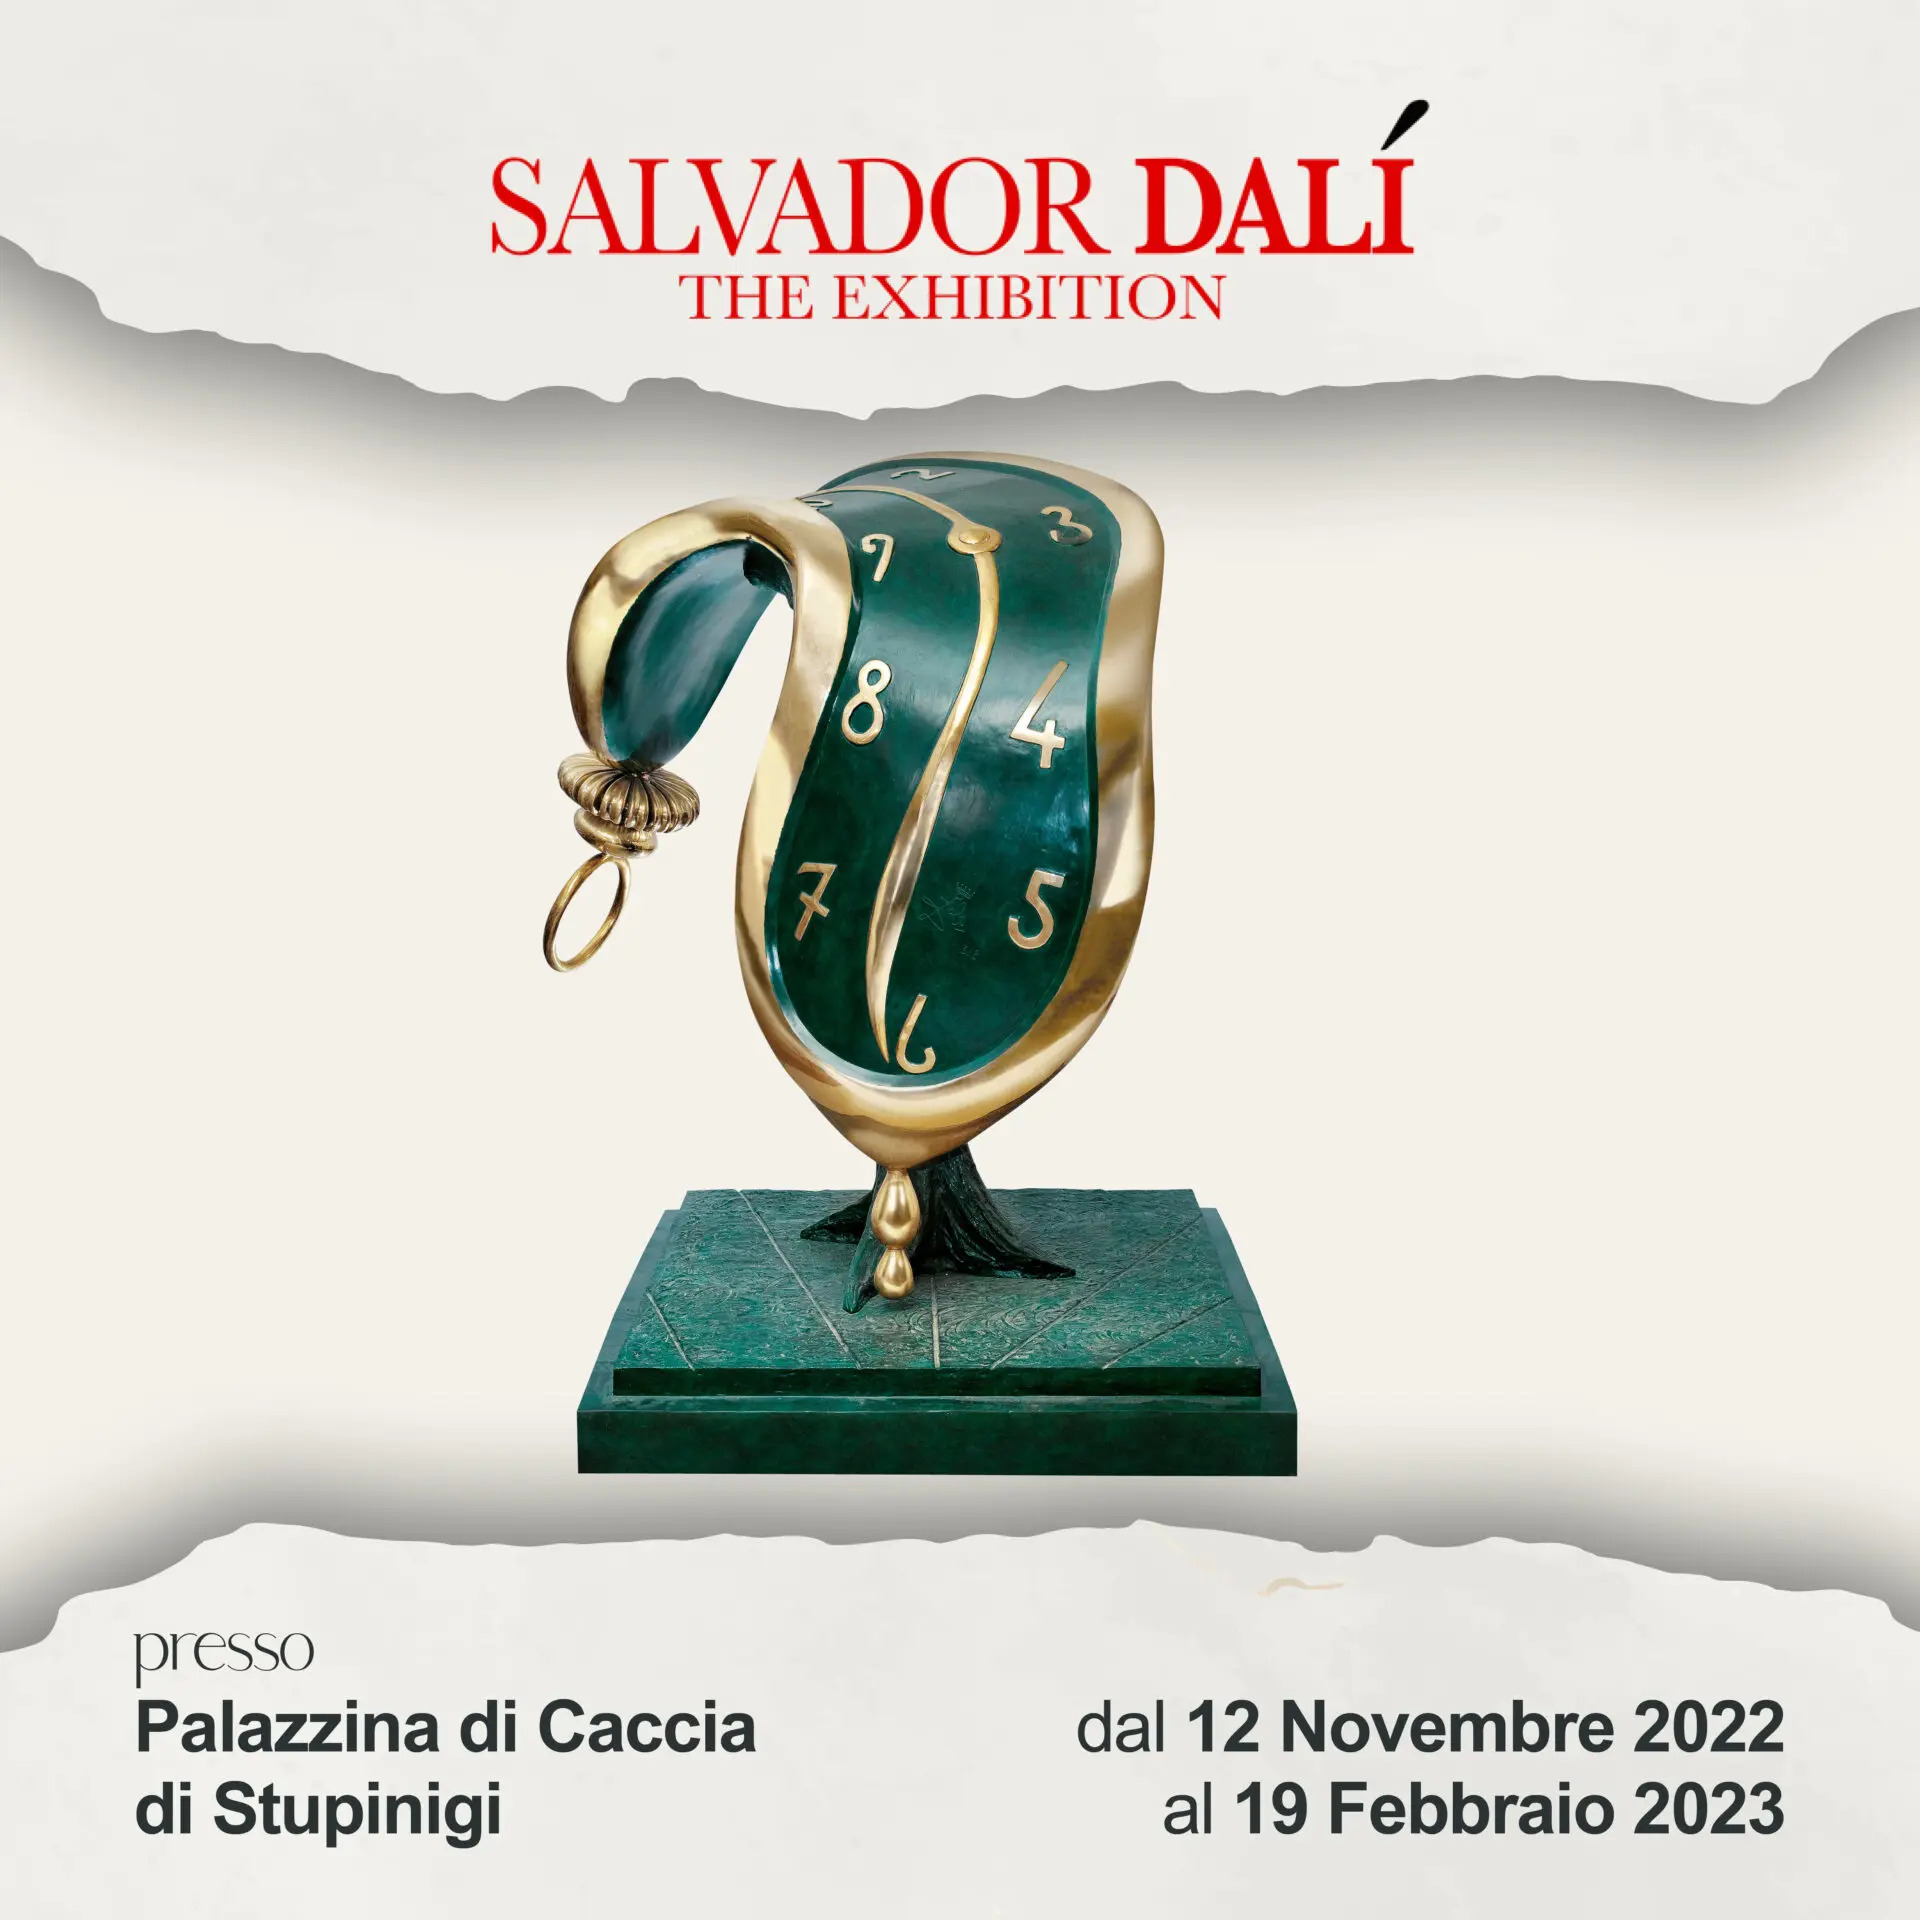 Salvador DALÍ The Exhibition in mostra alla Palazzina di Caccia di Stupinigi